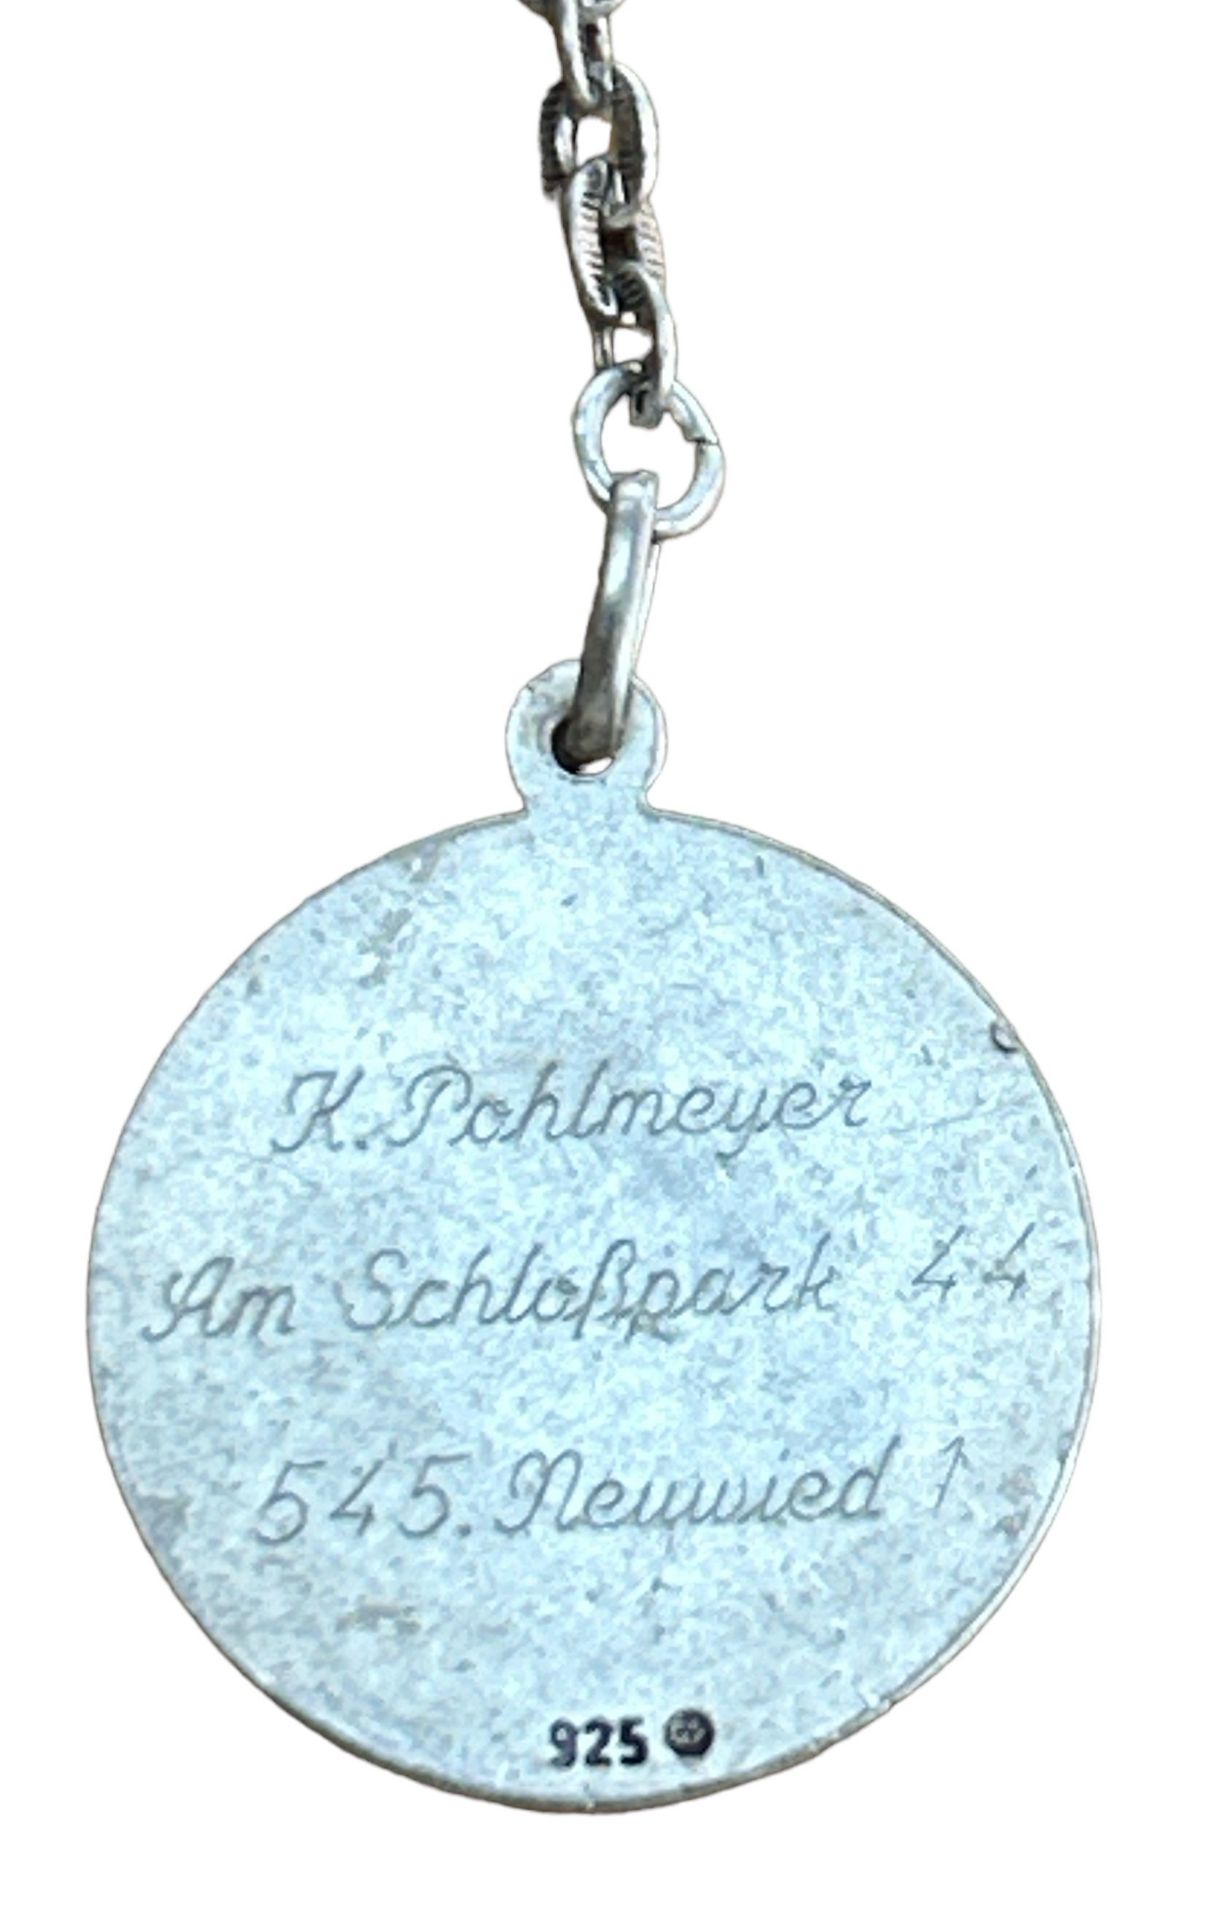 Schlüsselanhänger mit Hl. Christopherus, Silber-925-, verso Personendaten, 2,6 gr. - Bild 2 aus 2